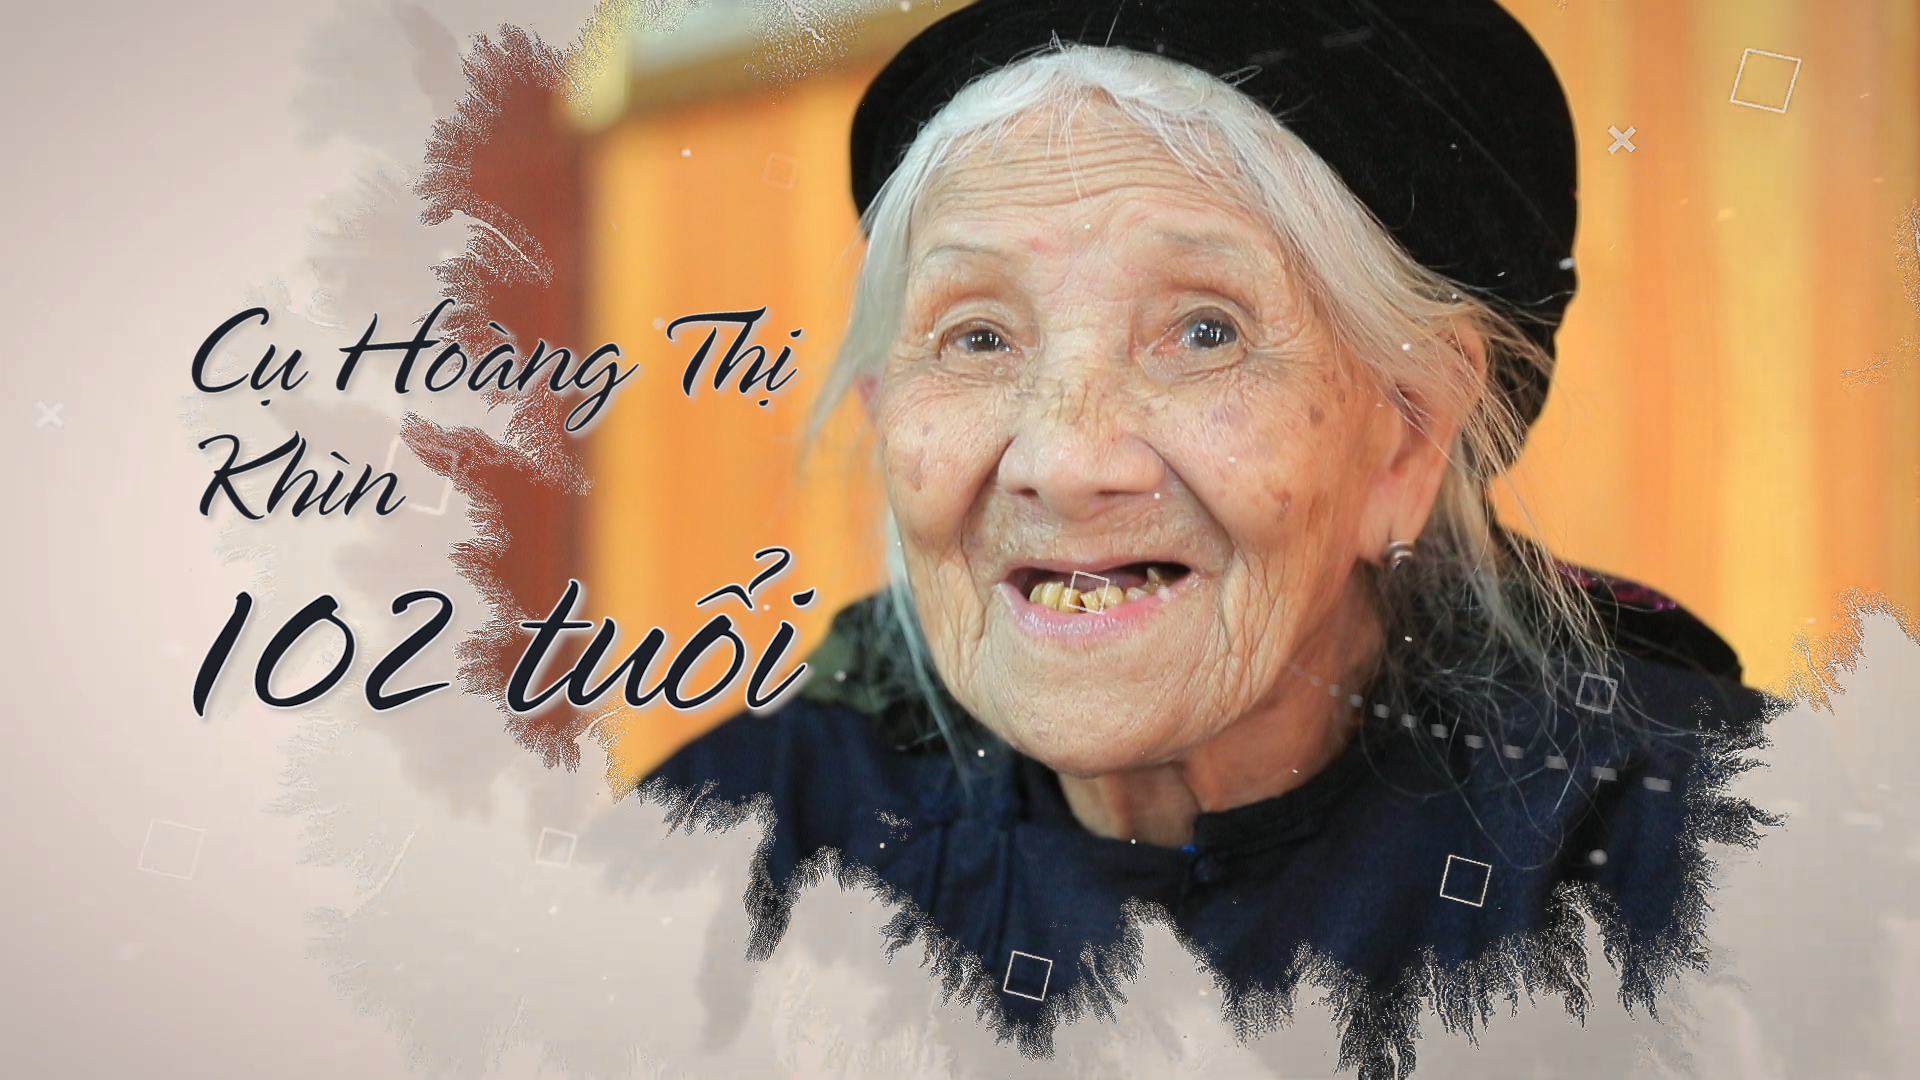 Cụ Khìn 102 tuổi, chứng nhân lịch sử sẽ xuất hiện trong chương trình